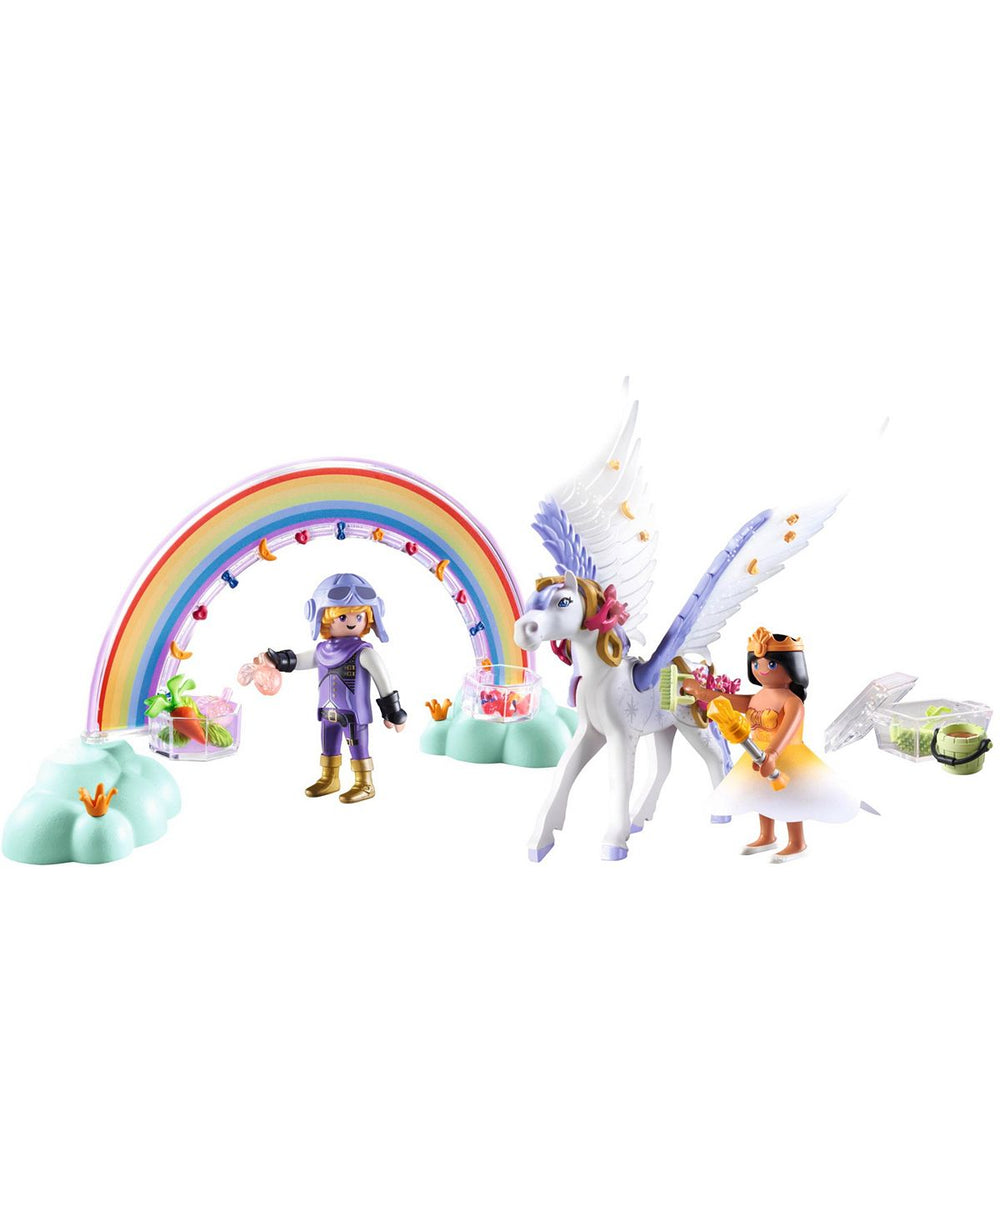 PLAYMOBIL Princess Magic Pegasus with Rainbow Care Set, 85 Pieces